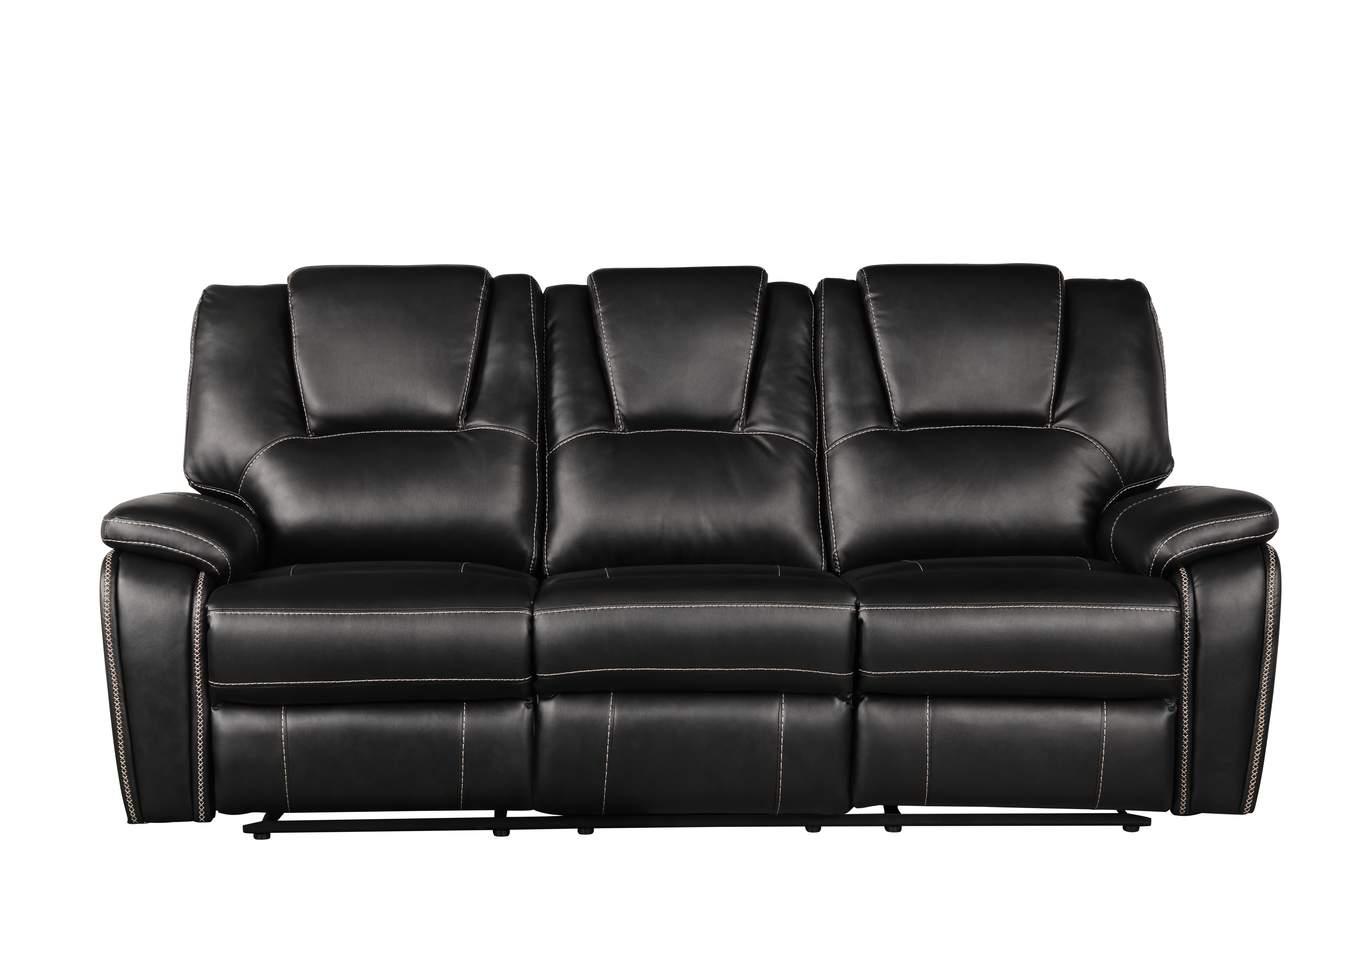 Galaxy Home Furniture Hongkong Recliner Sofa Set